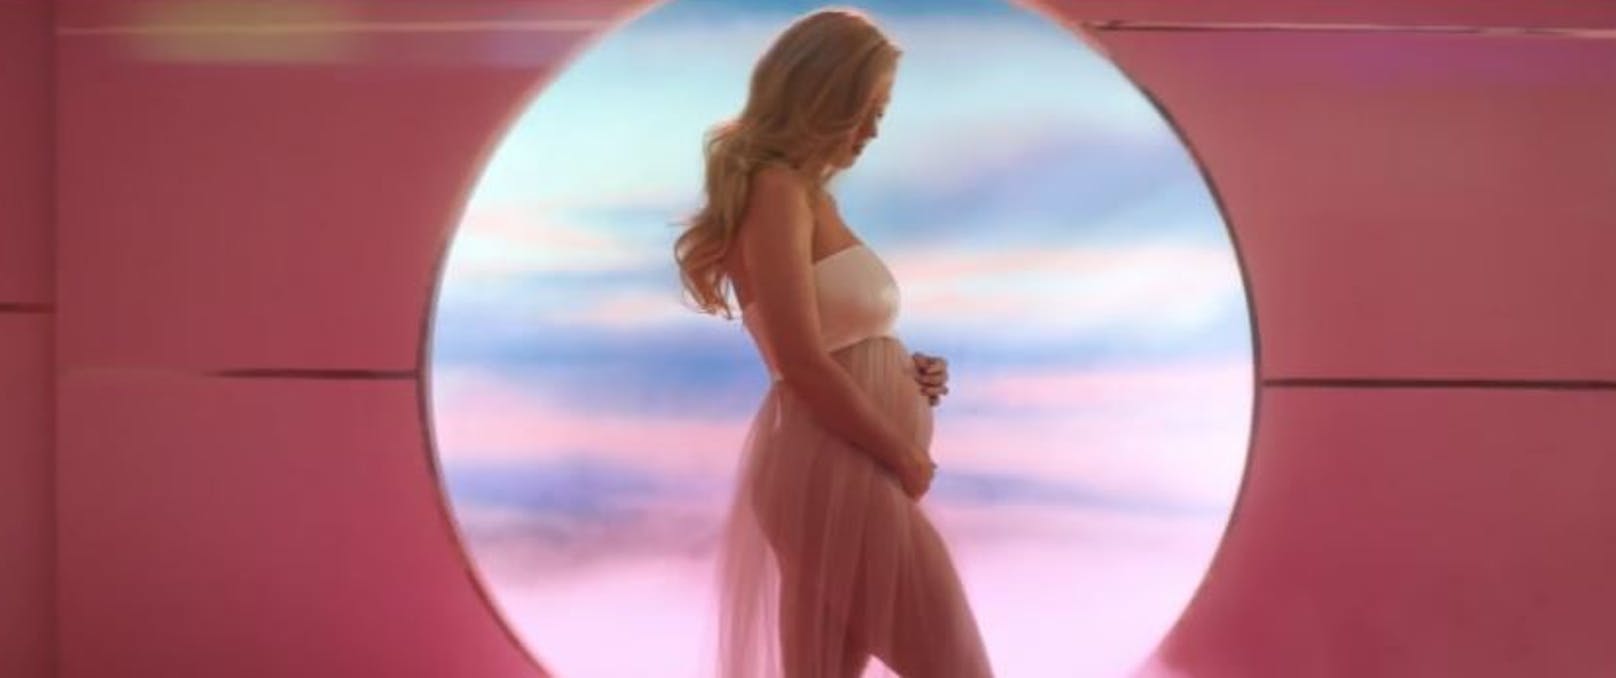 <strong>Katy Perry</strong> zeigt ihren Babybauch im Video zu "Never Worn White".